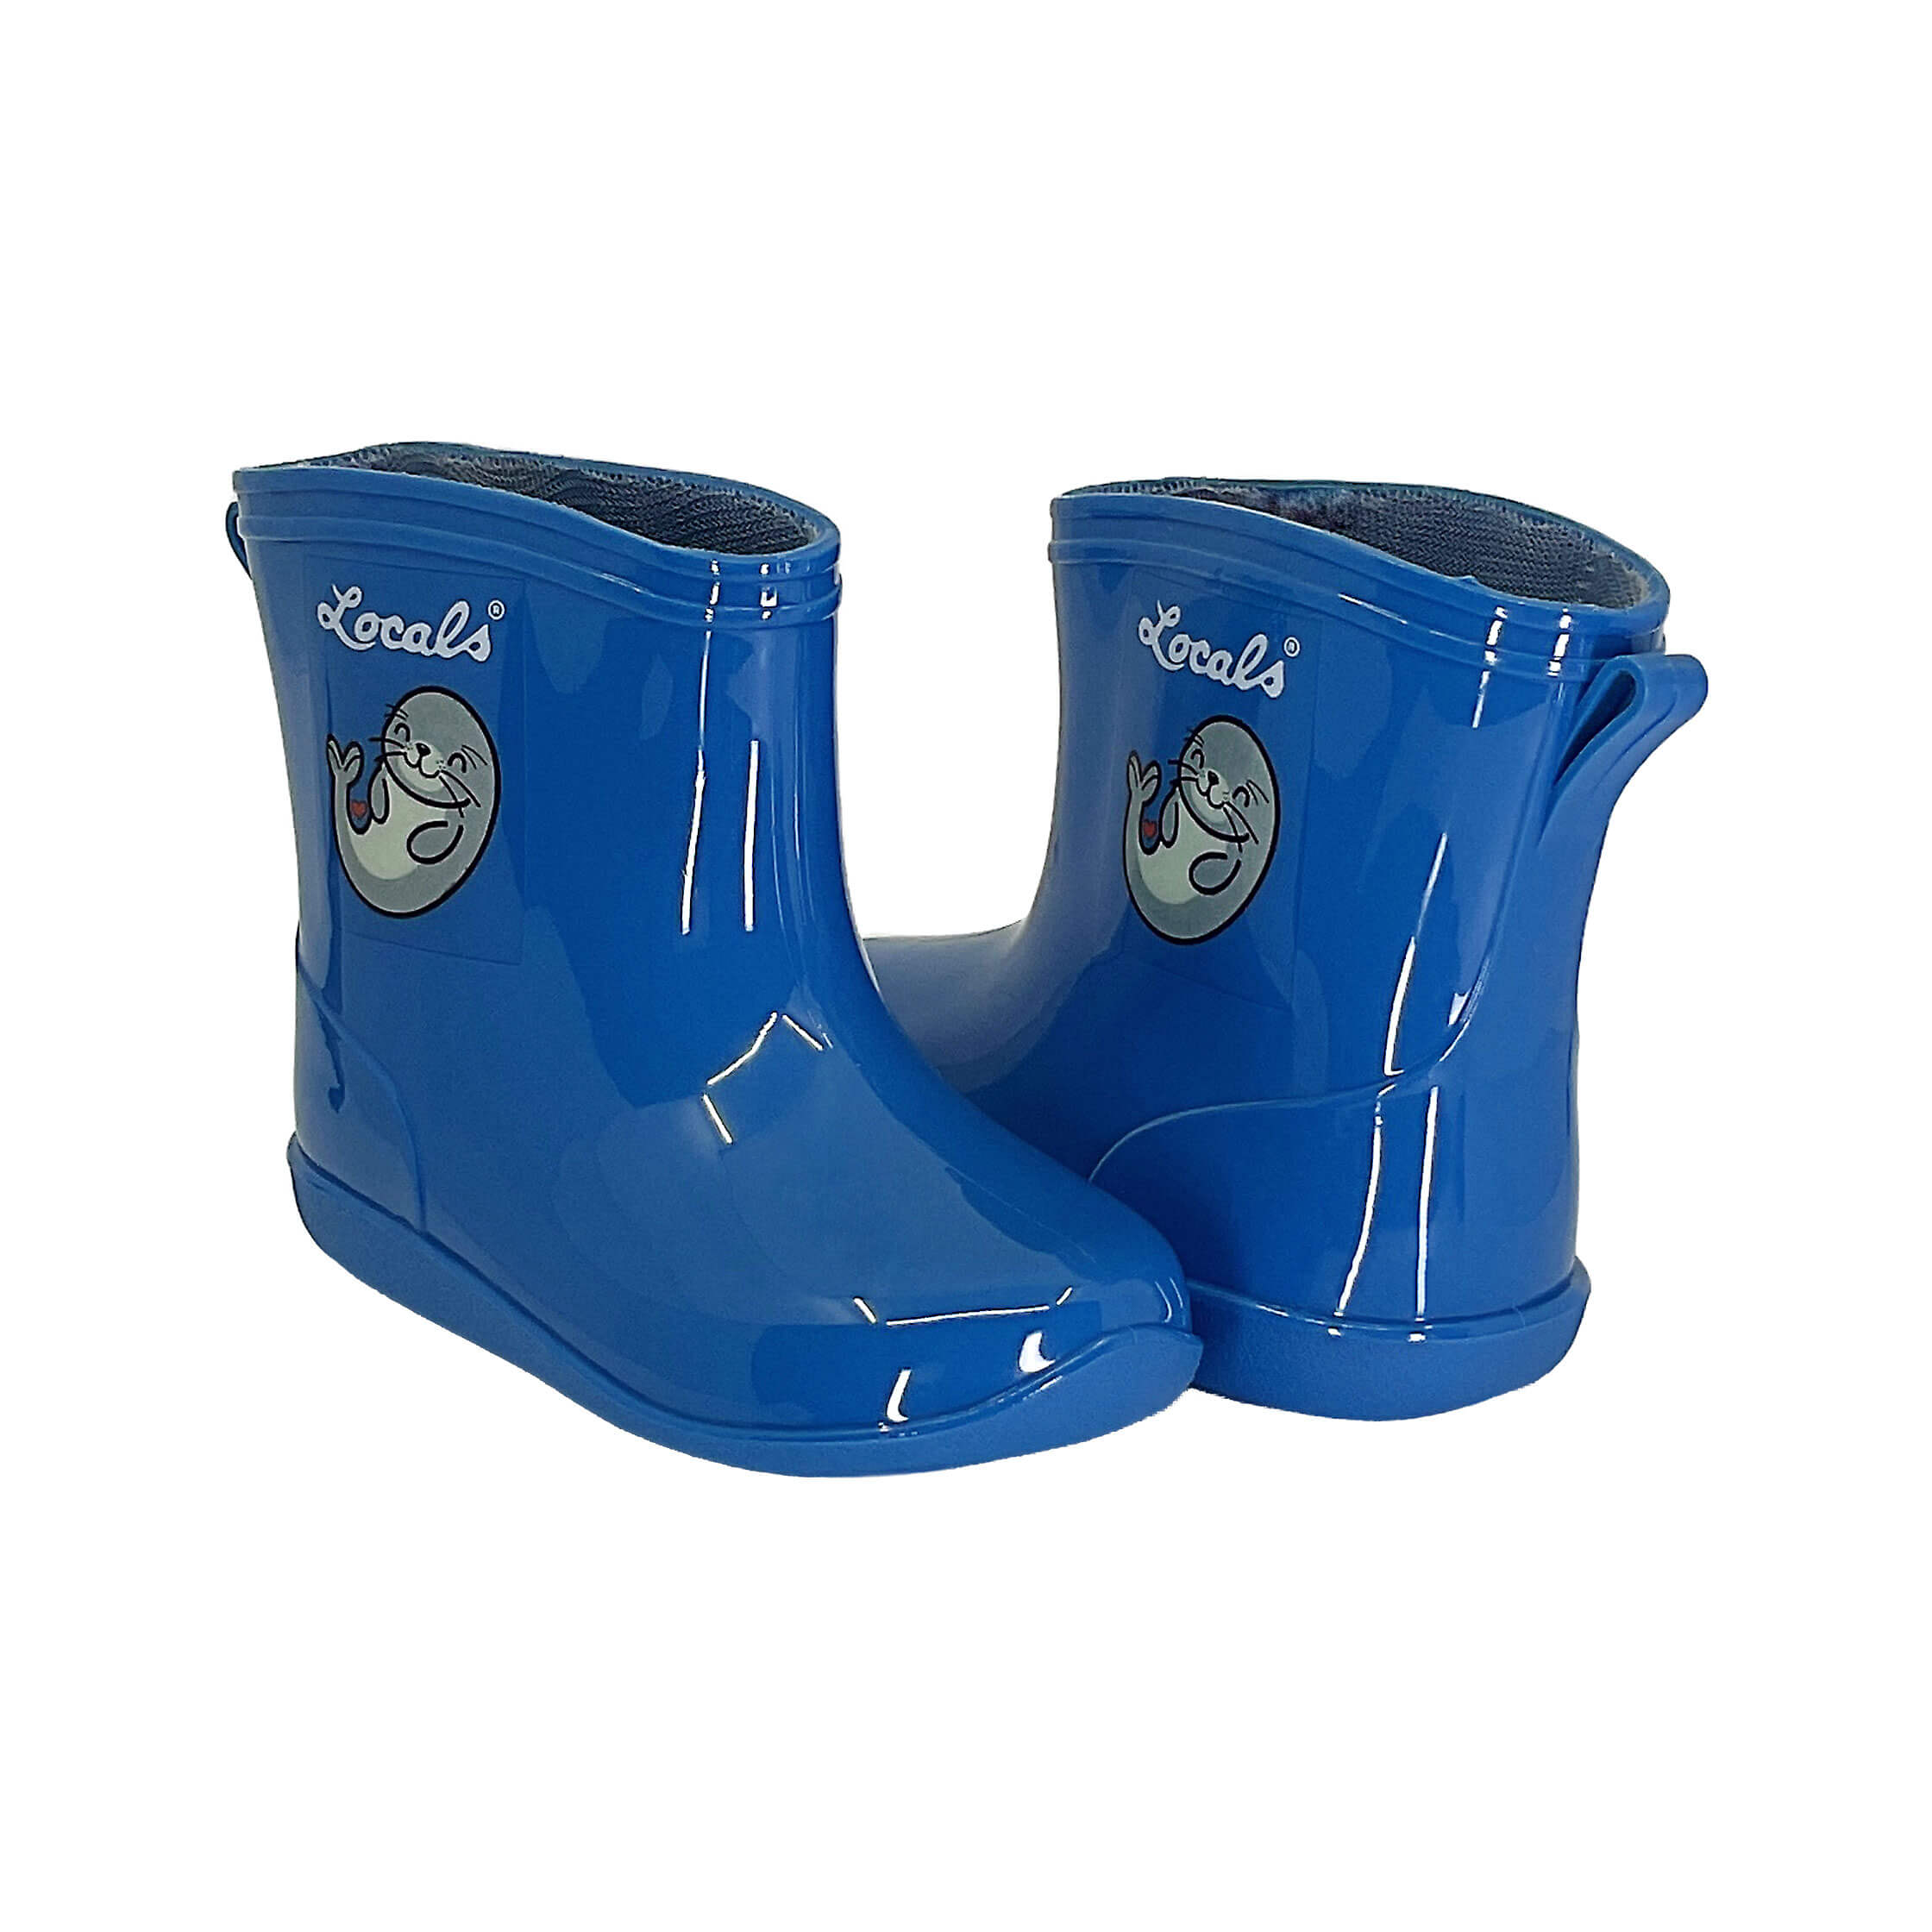 New! Kids Rain Boots - Blue